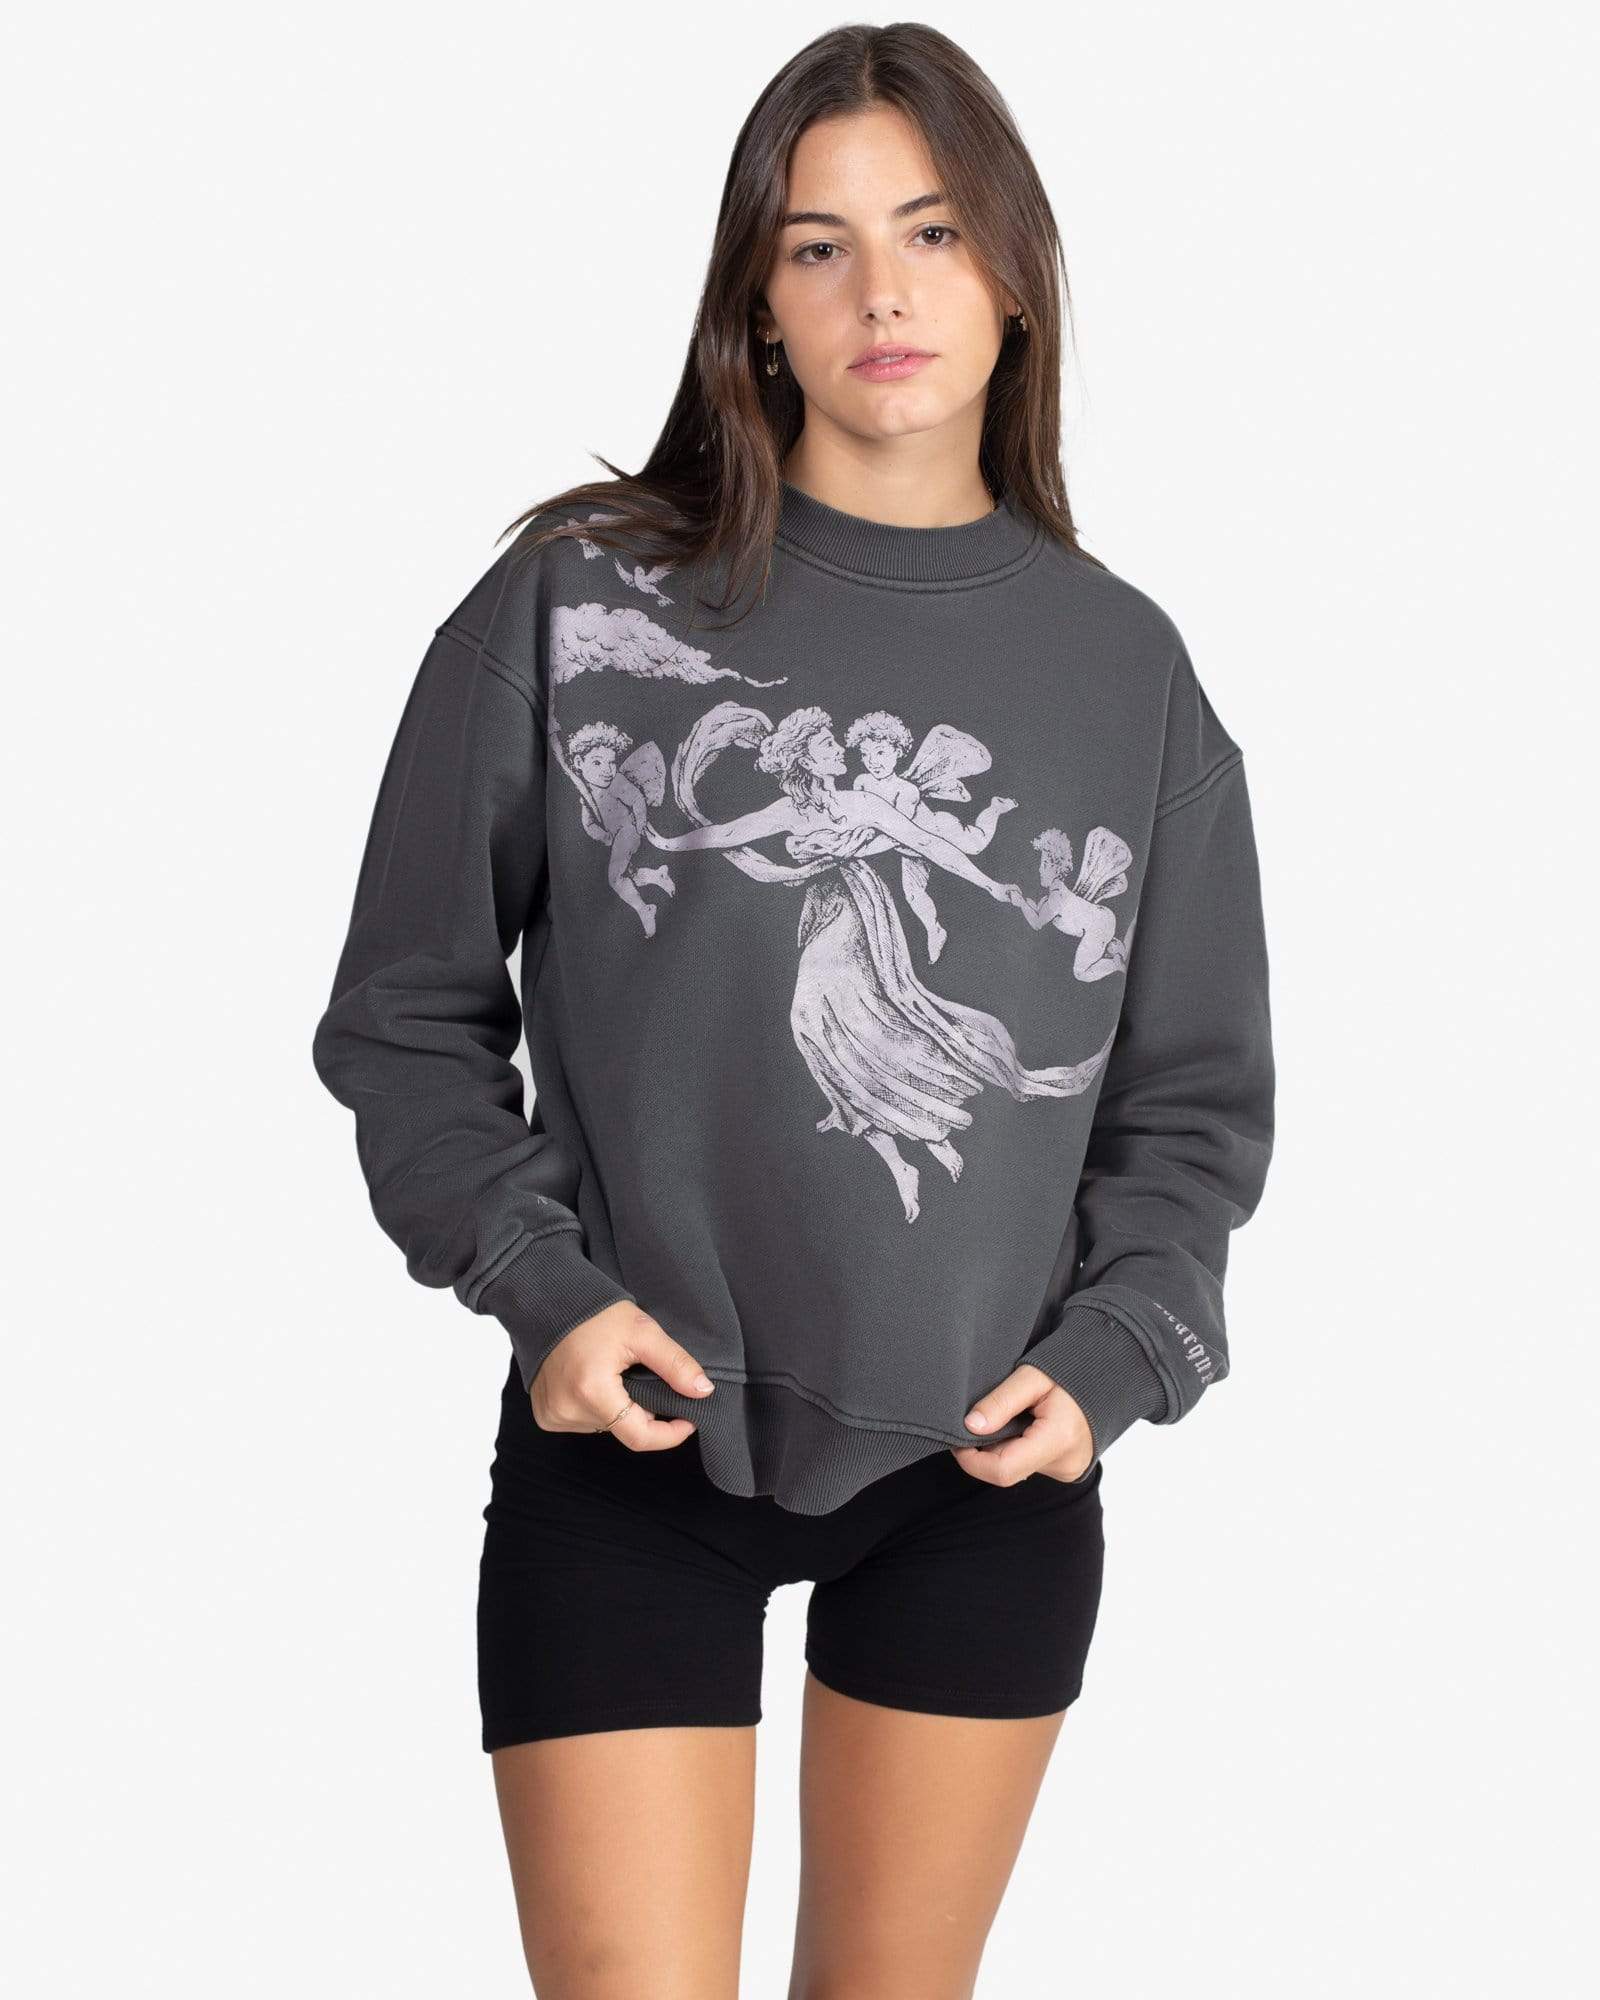 Enlightenment Sweatshirt (Charcoal)